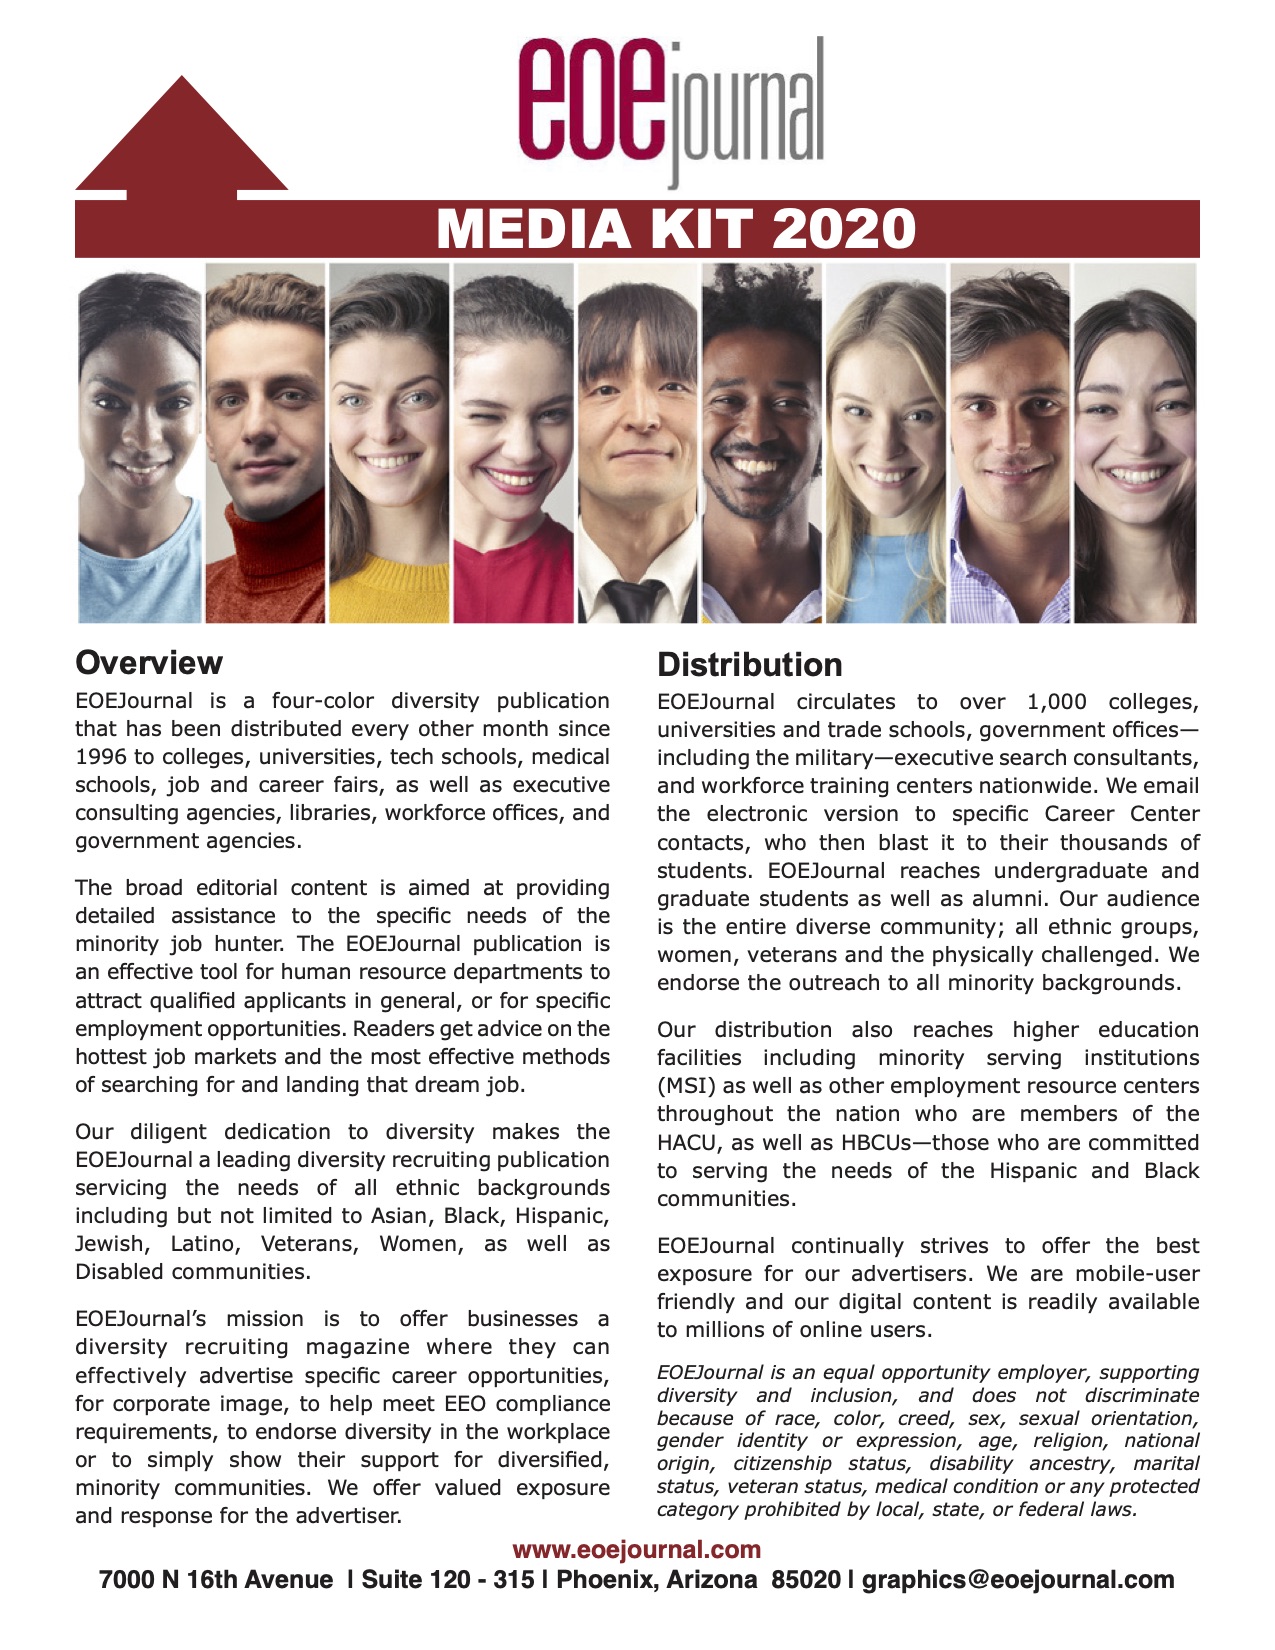 EOEJ_media kit_2020_V2_page1